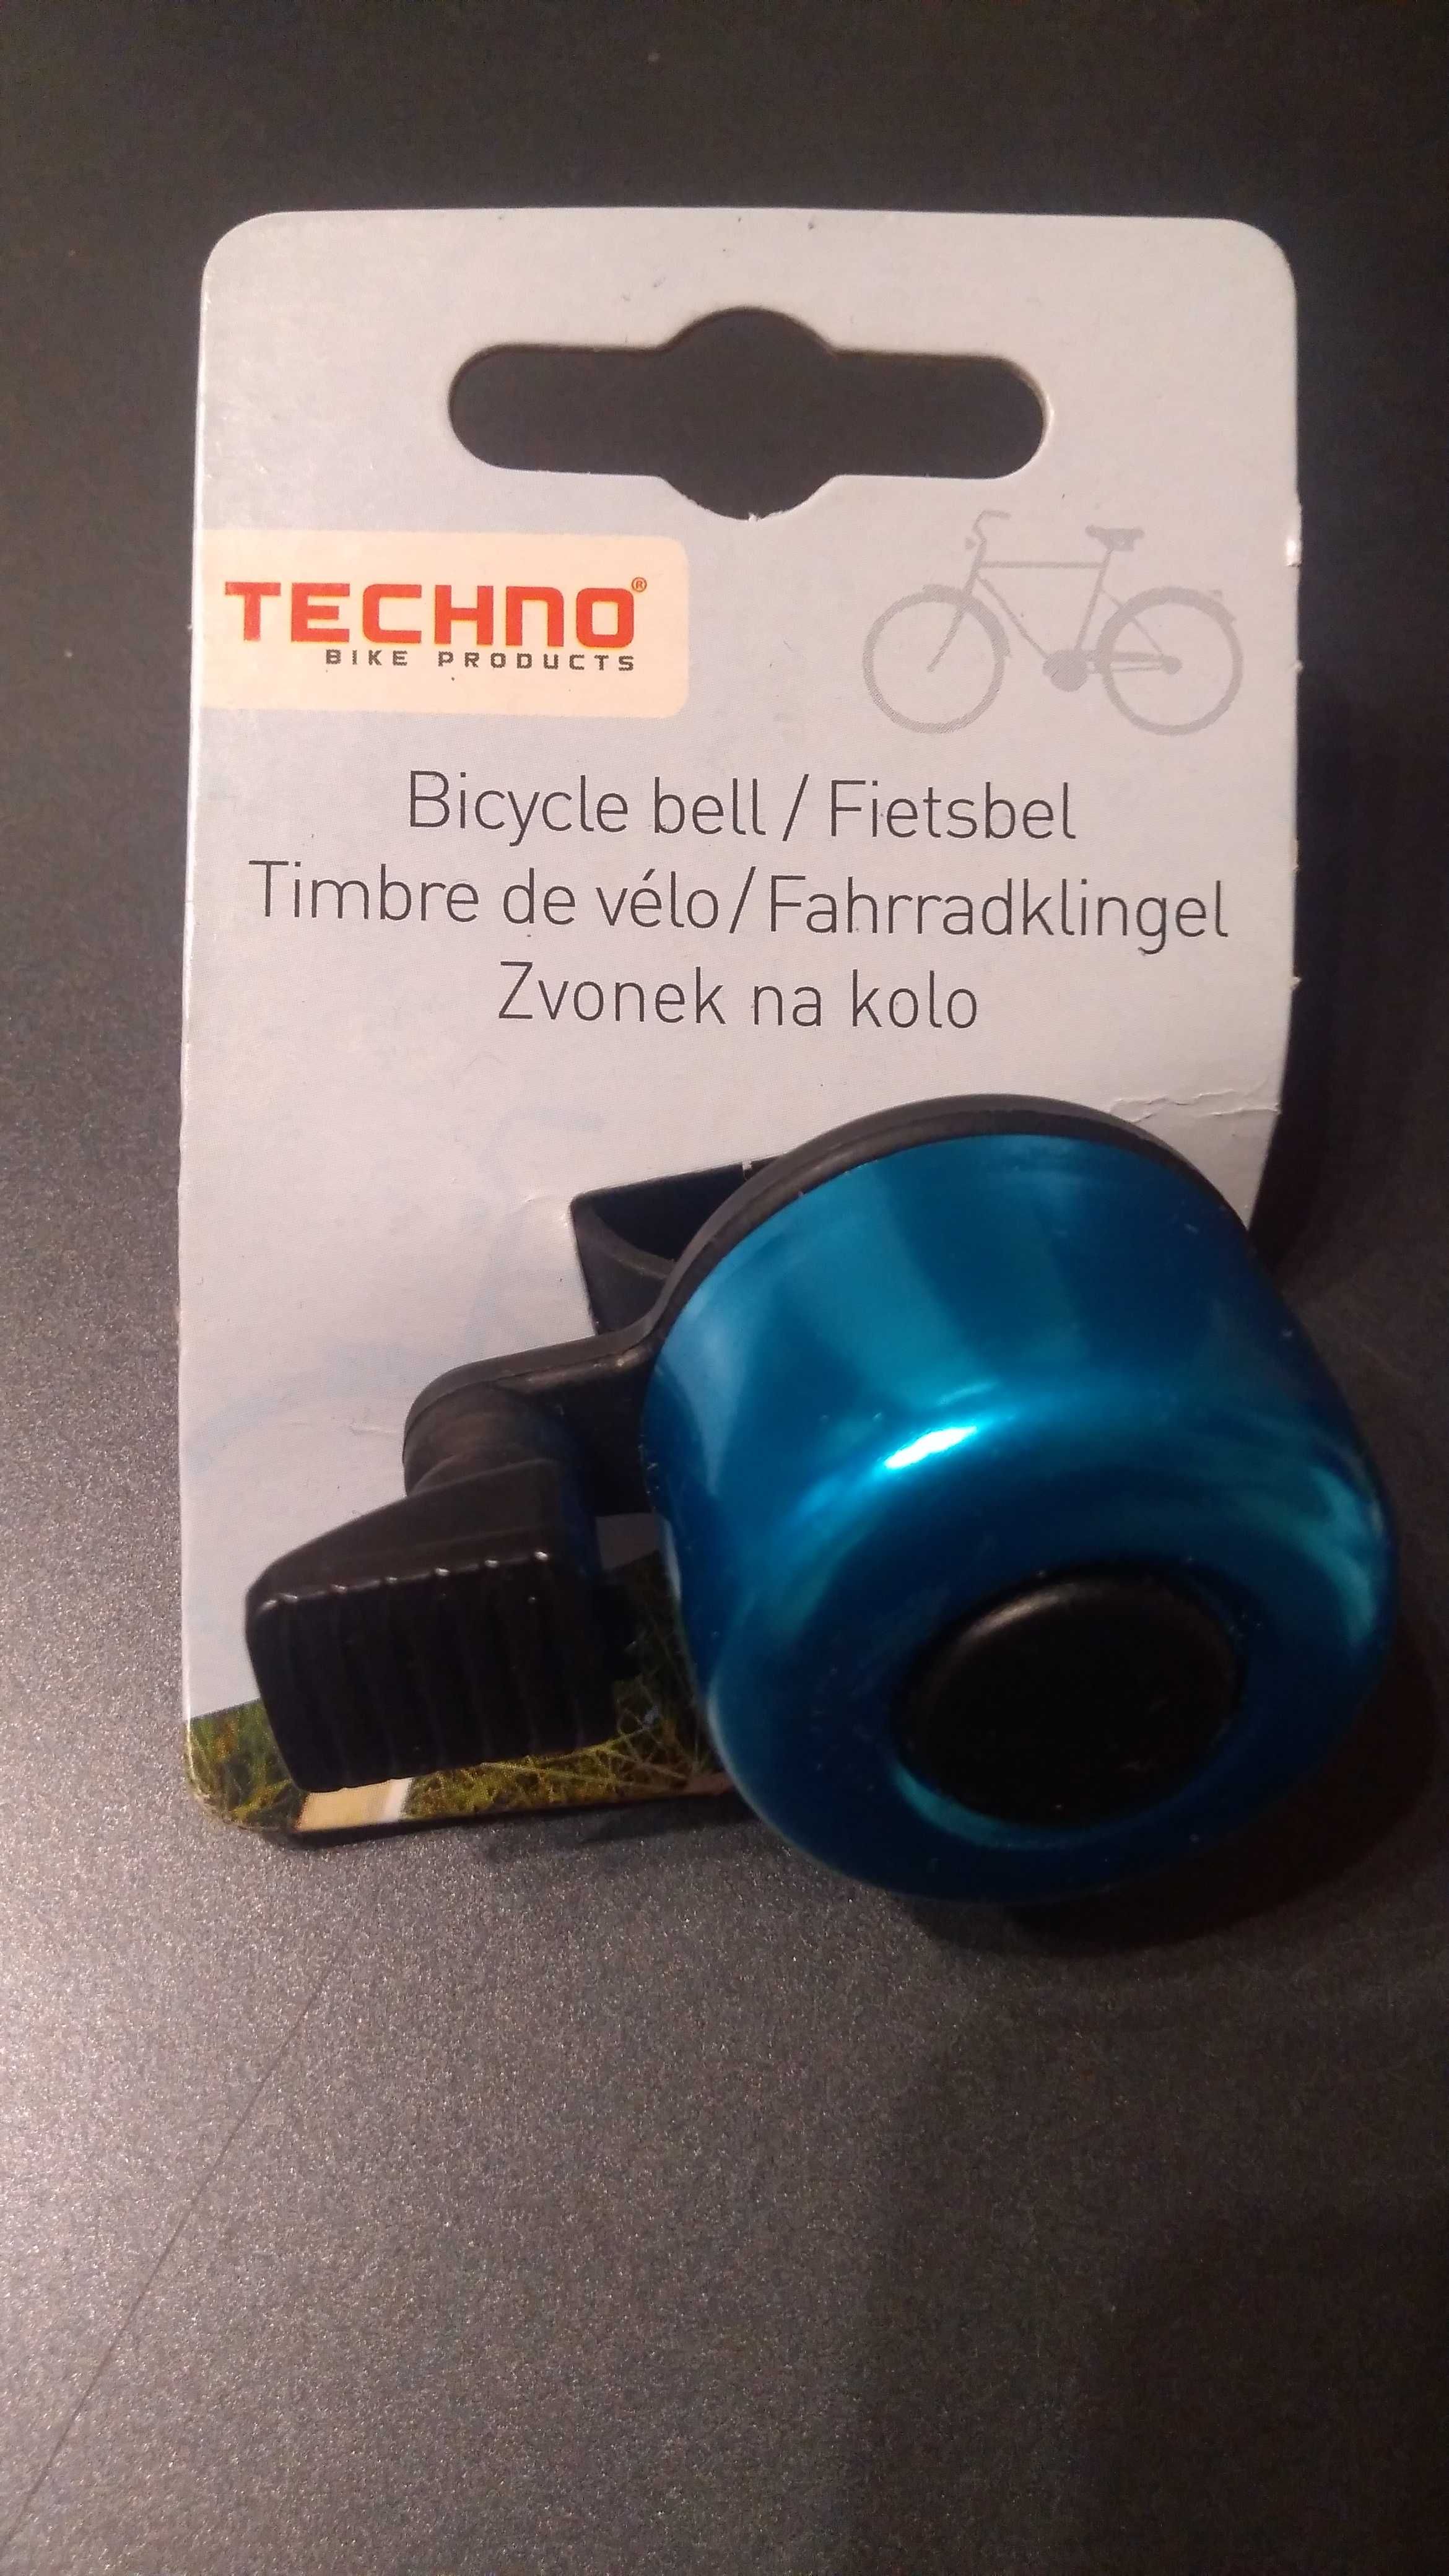 Sonerie bicicleta Techno /olanda